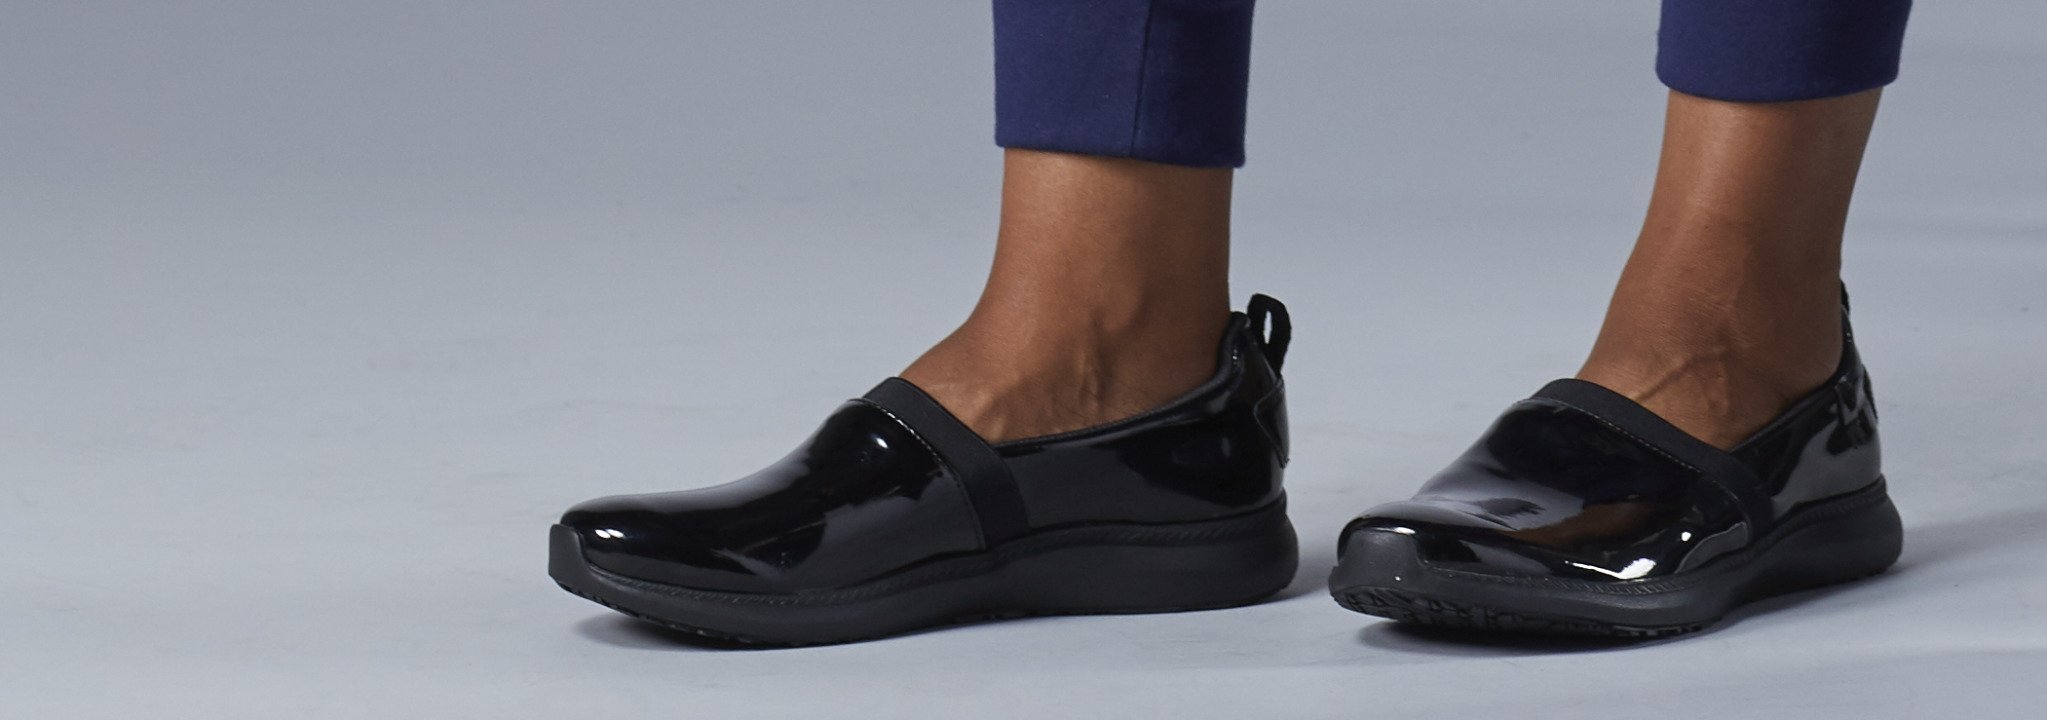 slip resistant slippers for womens